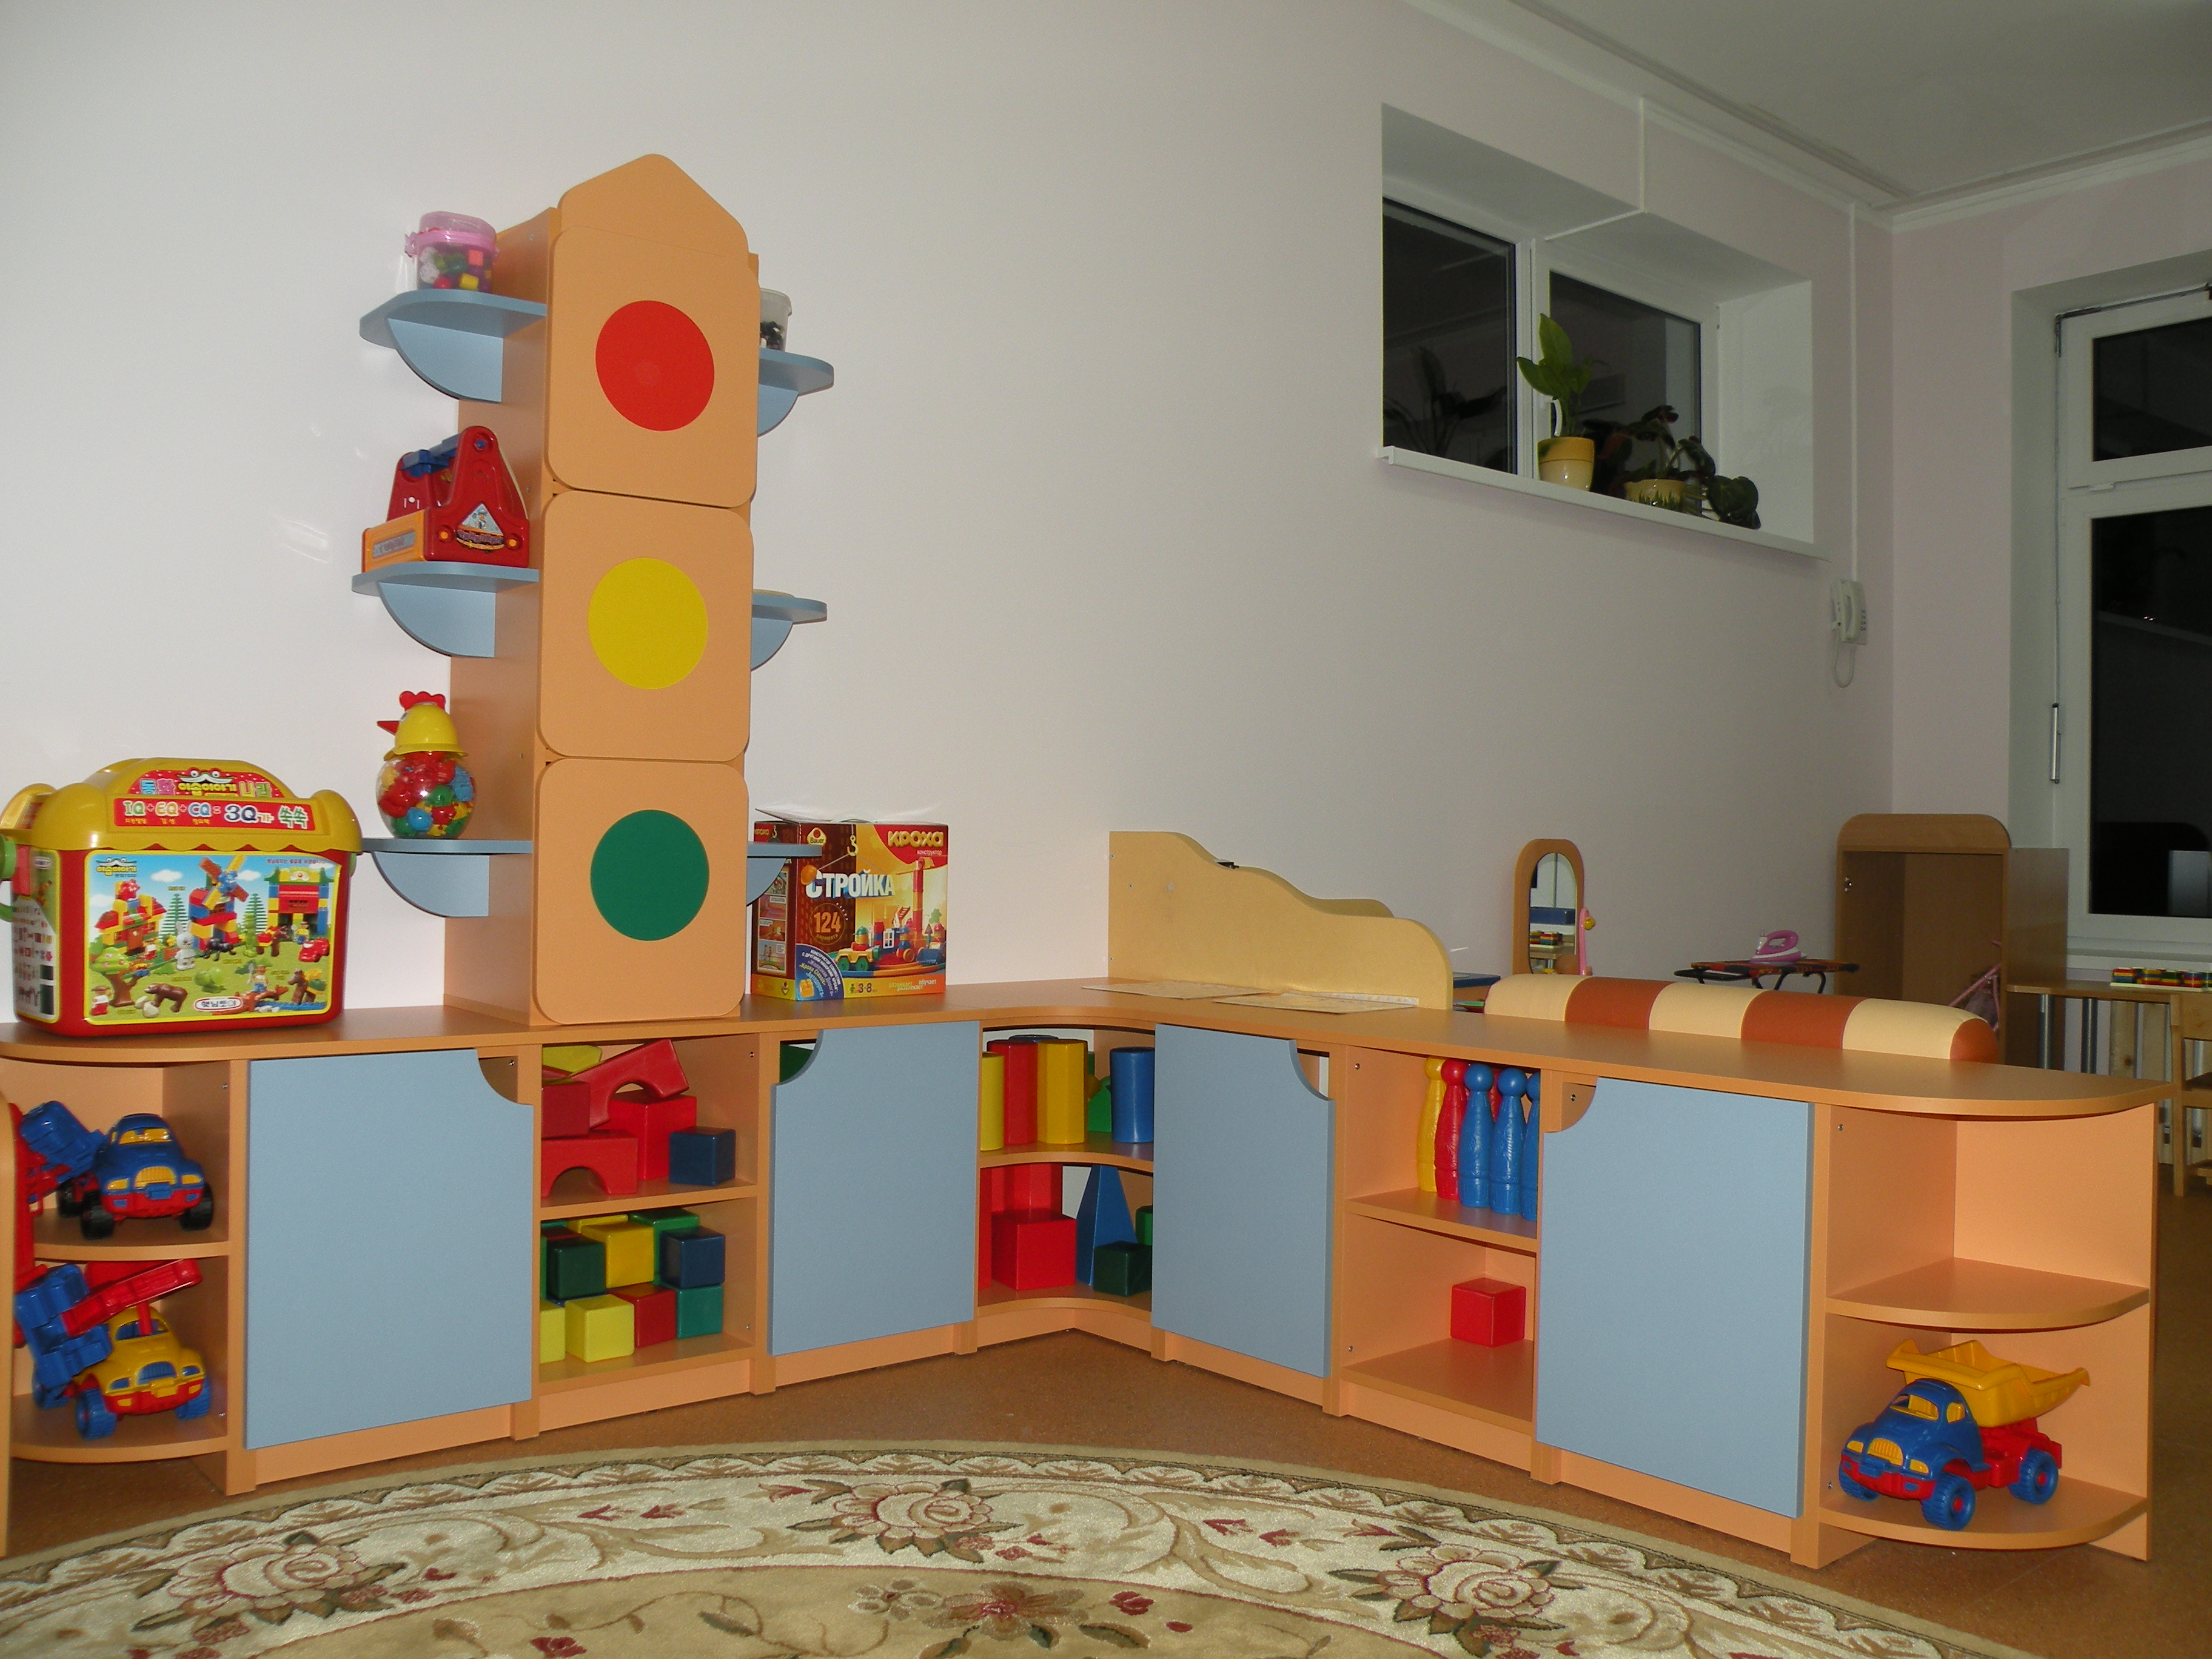 Мебель для детского сада спб. Мебель для детского сада. Мебель длядетсого сада. Детская мебель для детского сада. Мебель для группы детского сада.